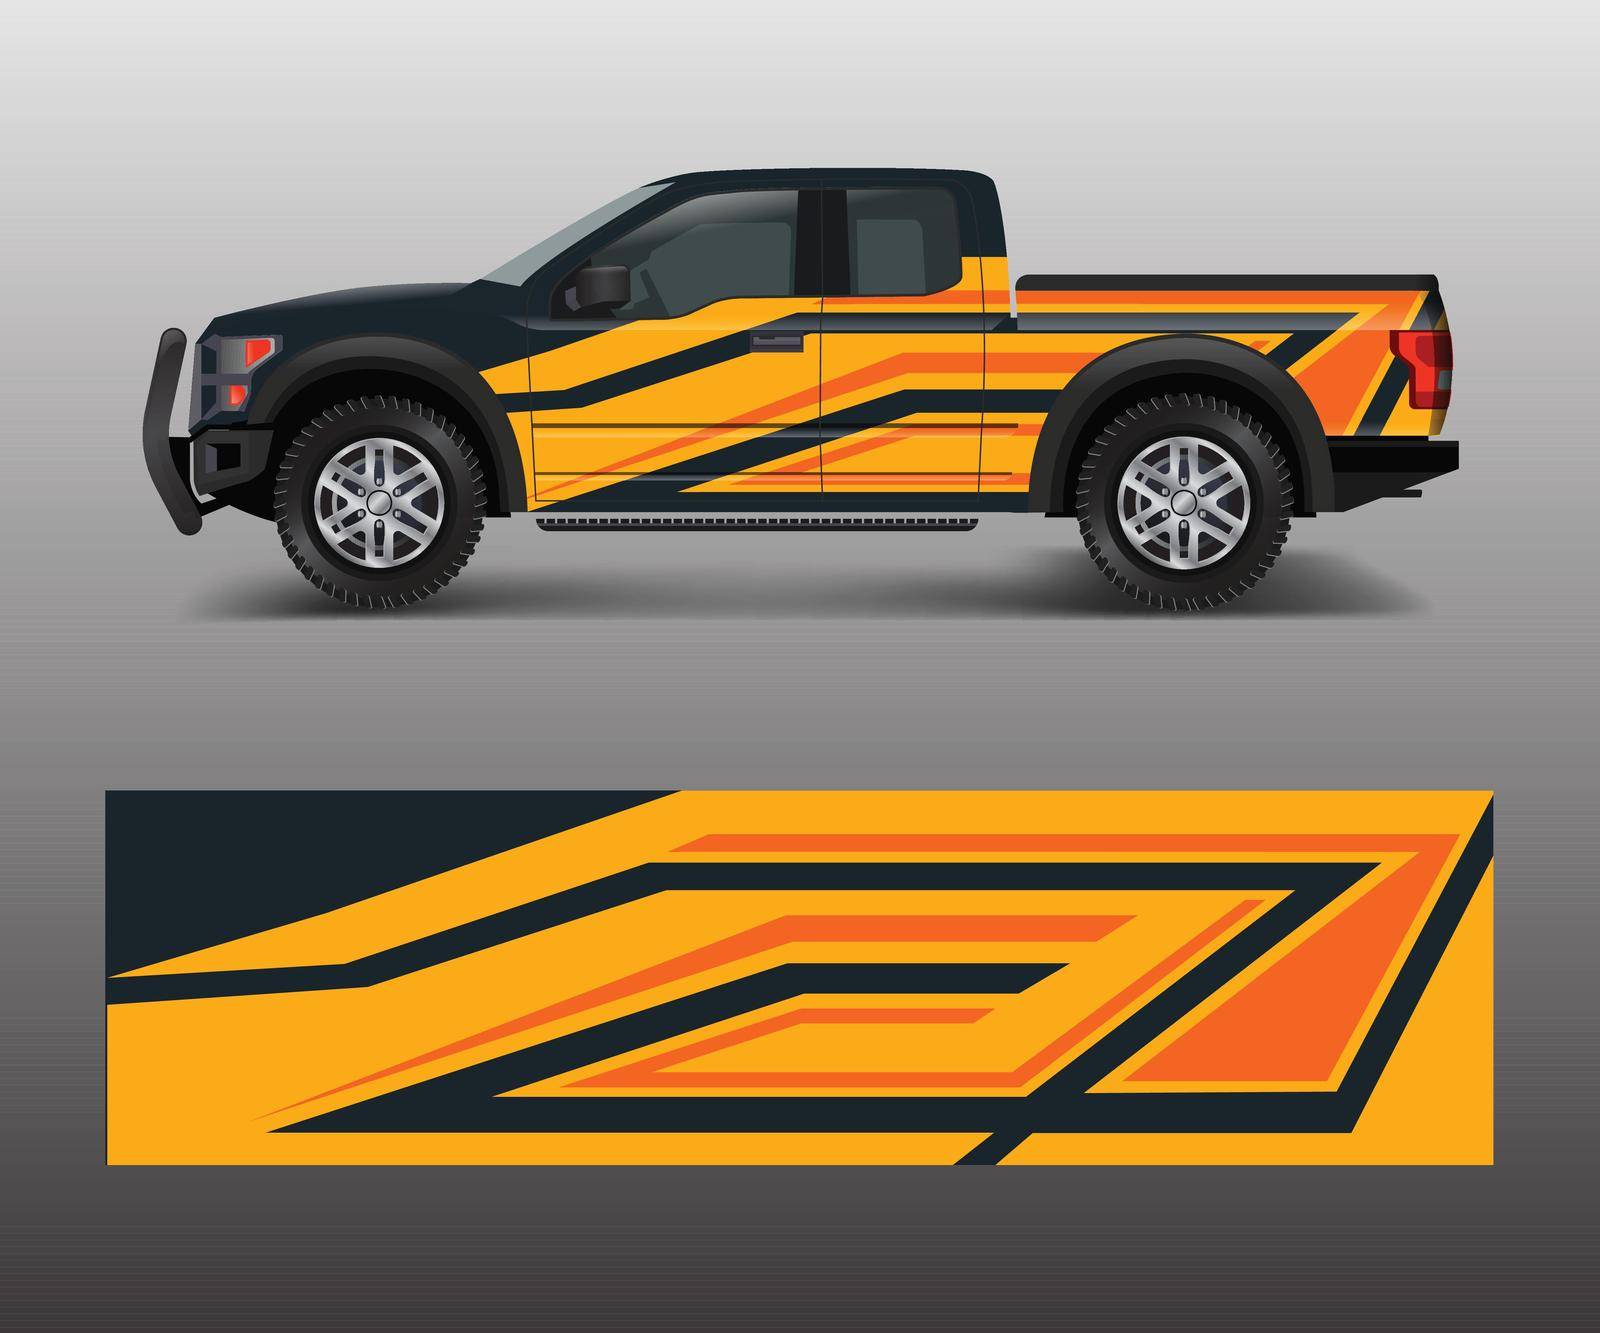 modern design for truck graphics vinyl wrap vector